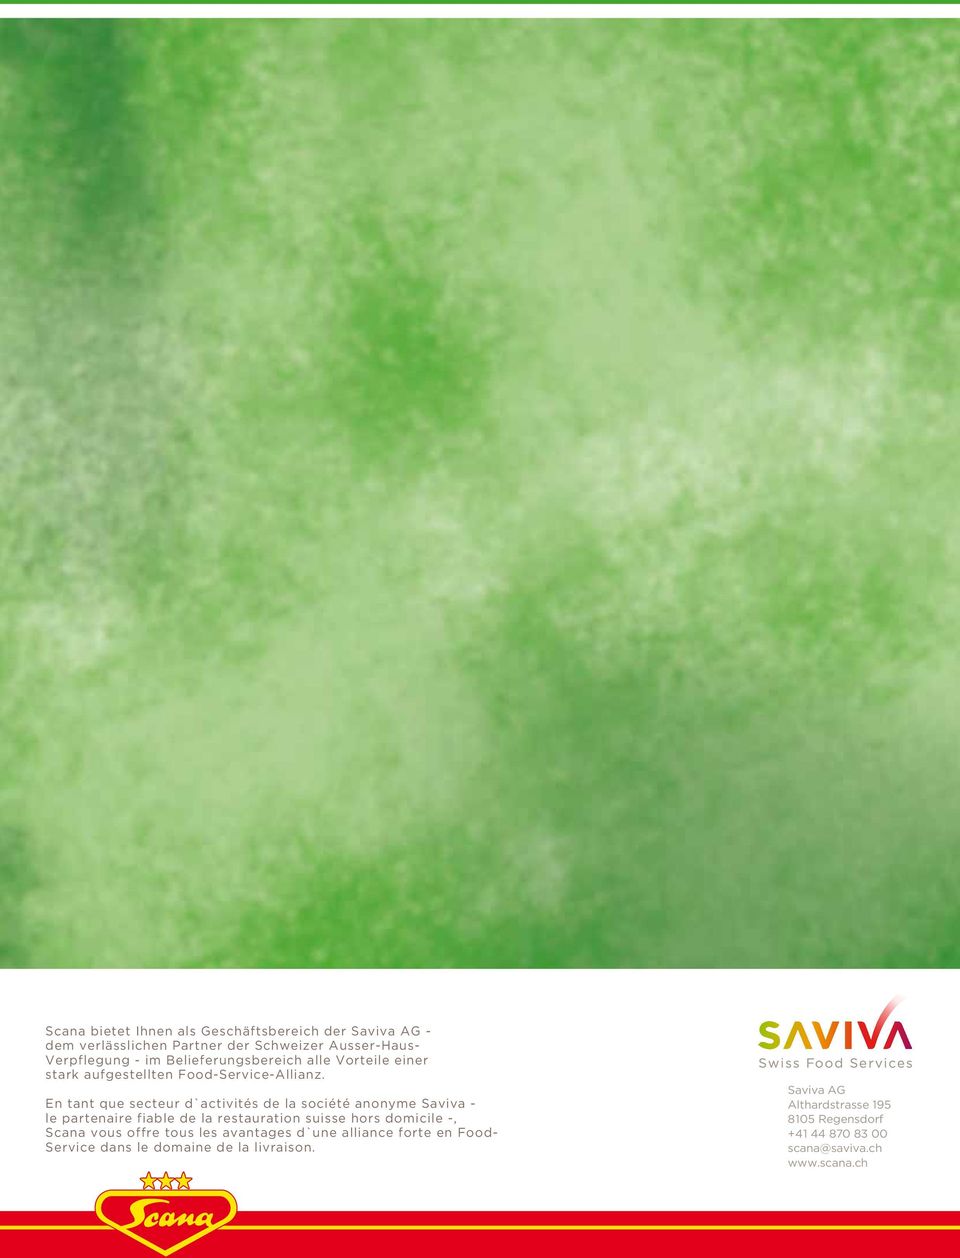 En tant que secteur d`activités de la société anonyme Saviva - le partenaire fiable de la restauration suisse hors domicile -, Scana